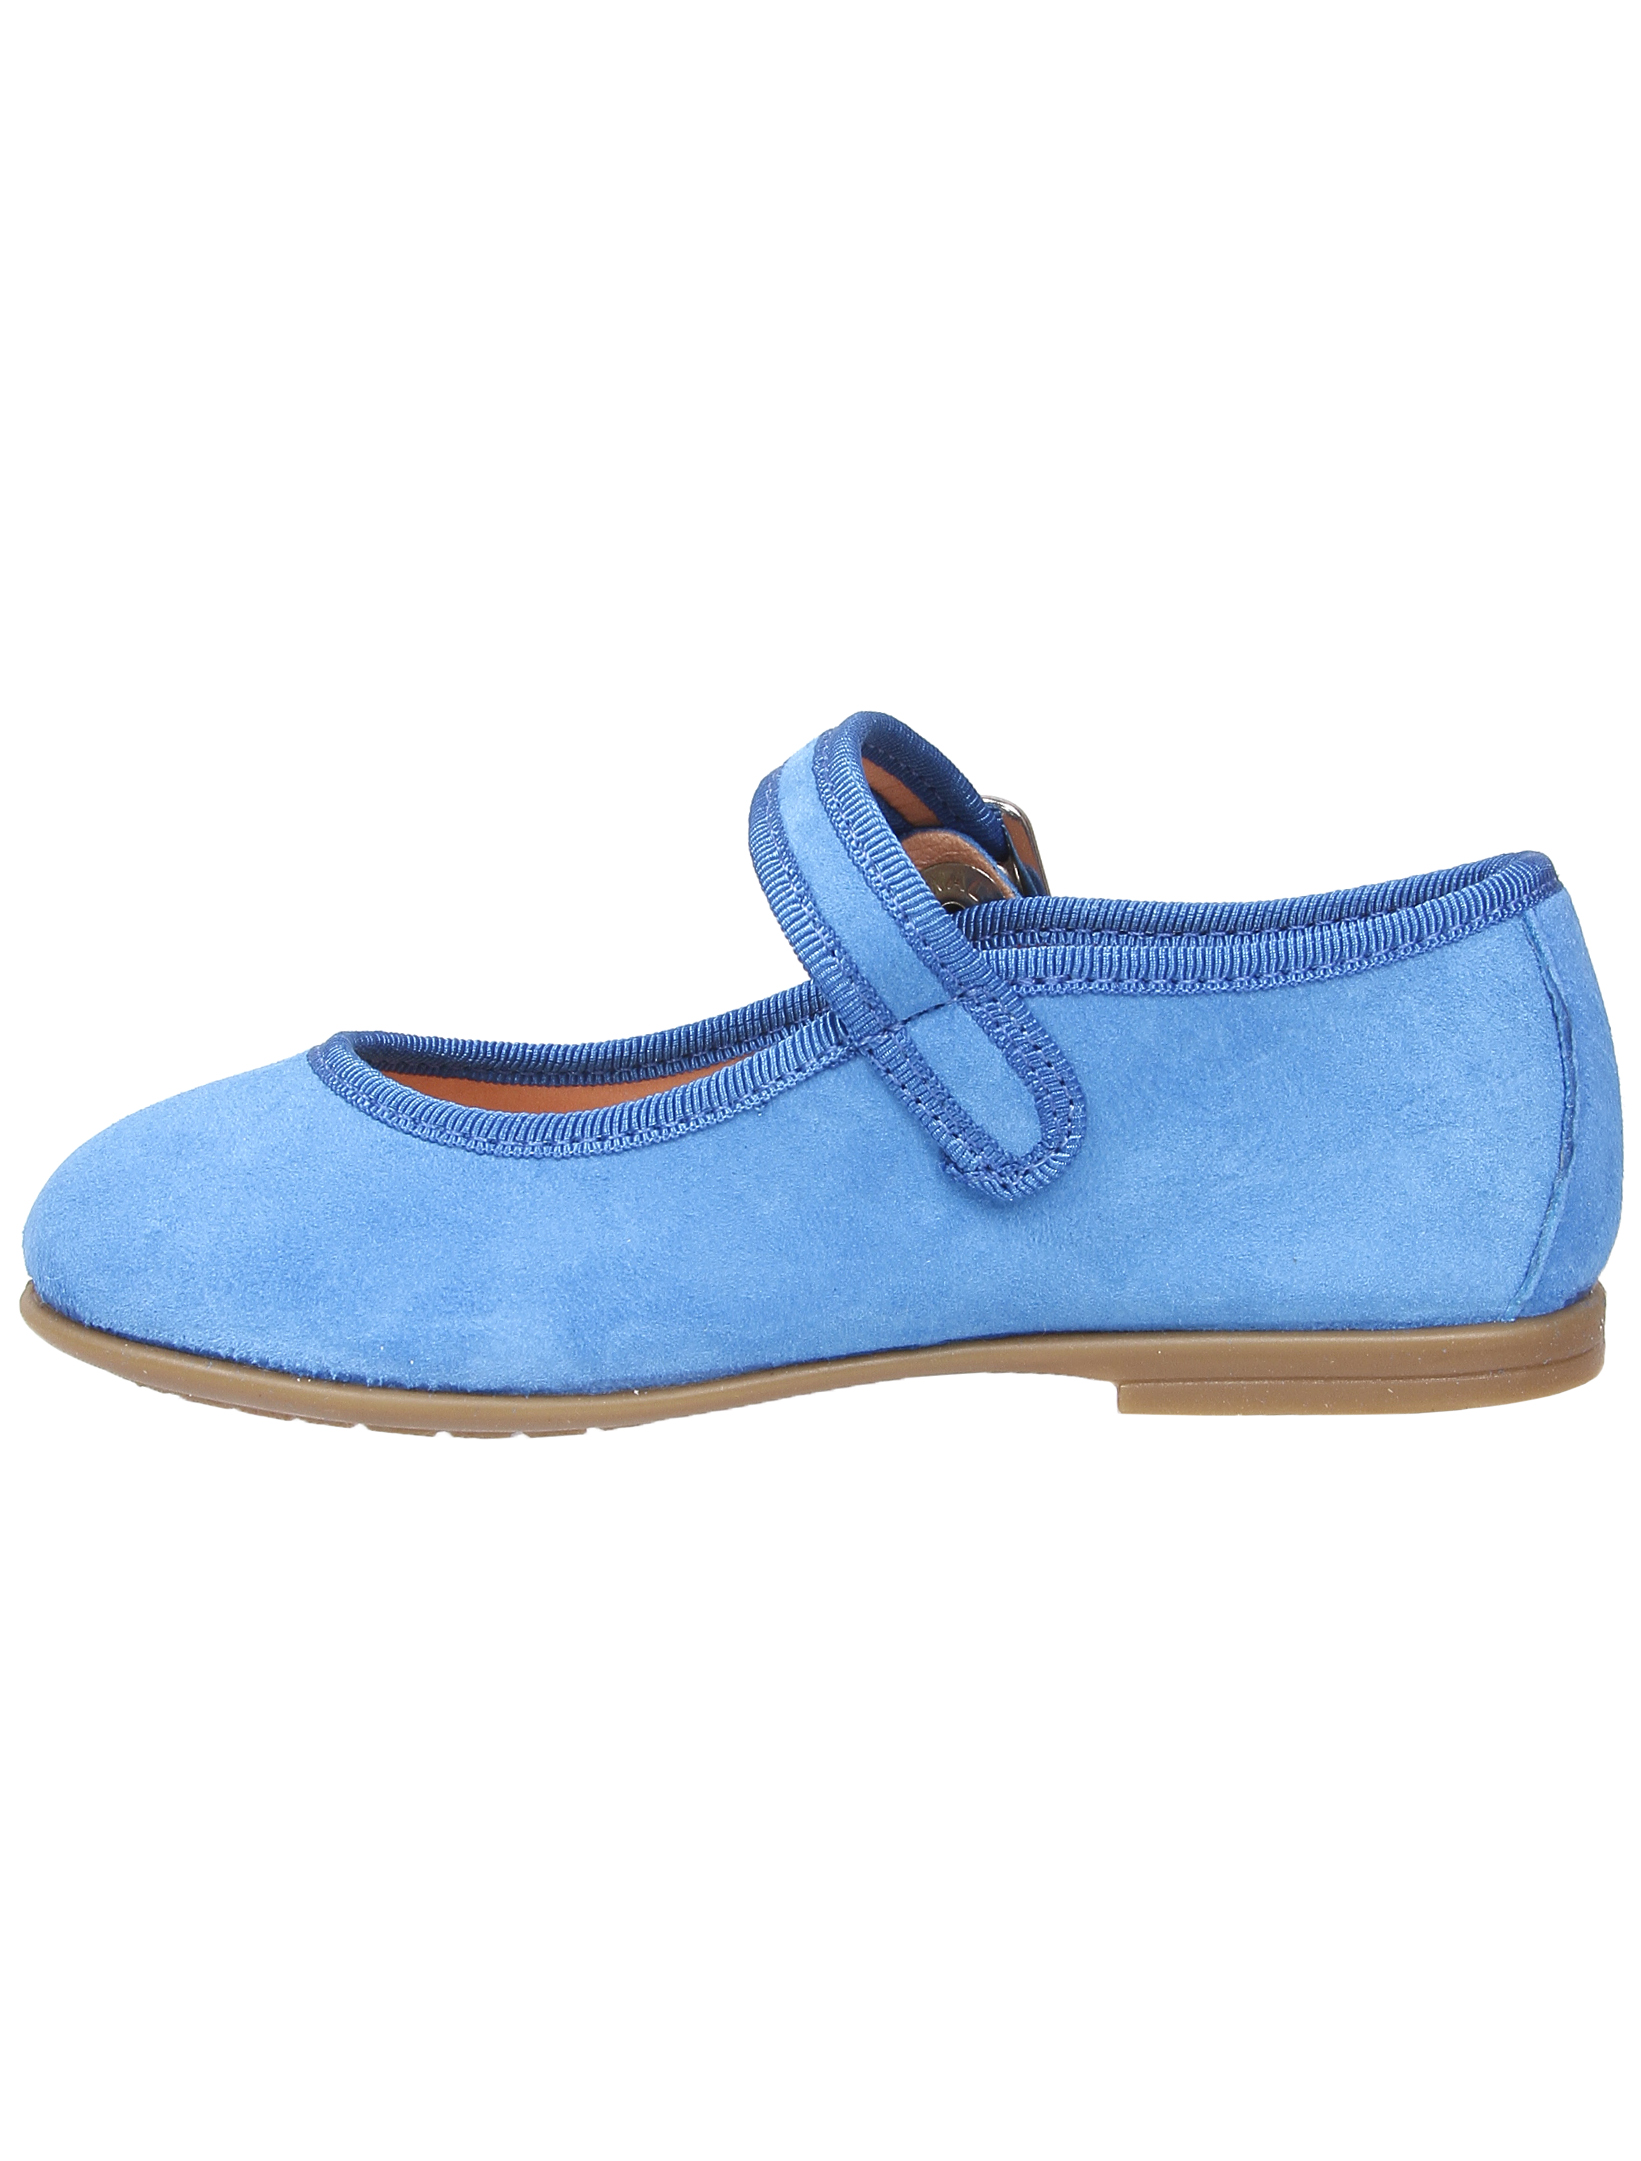 Туфли UNISA 1952860, цвет голубой, размер 33 2011509970013 - фото 4